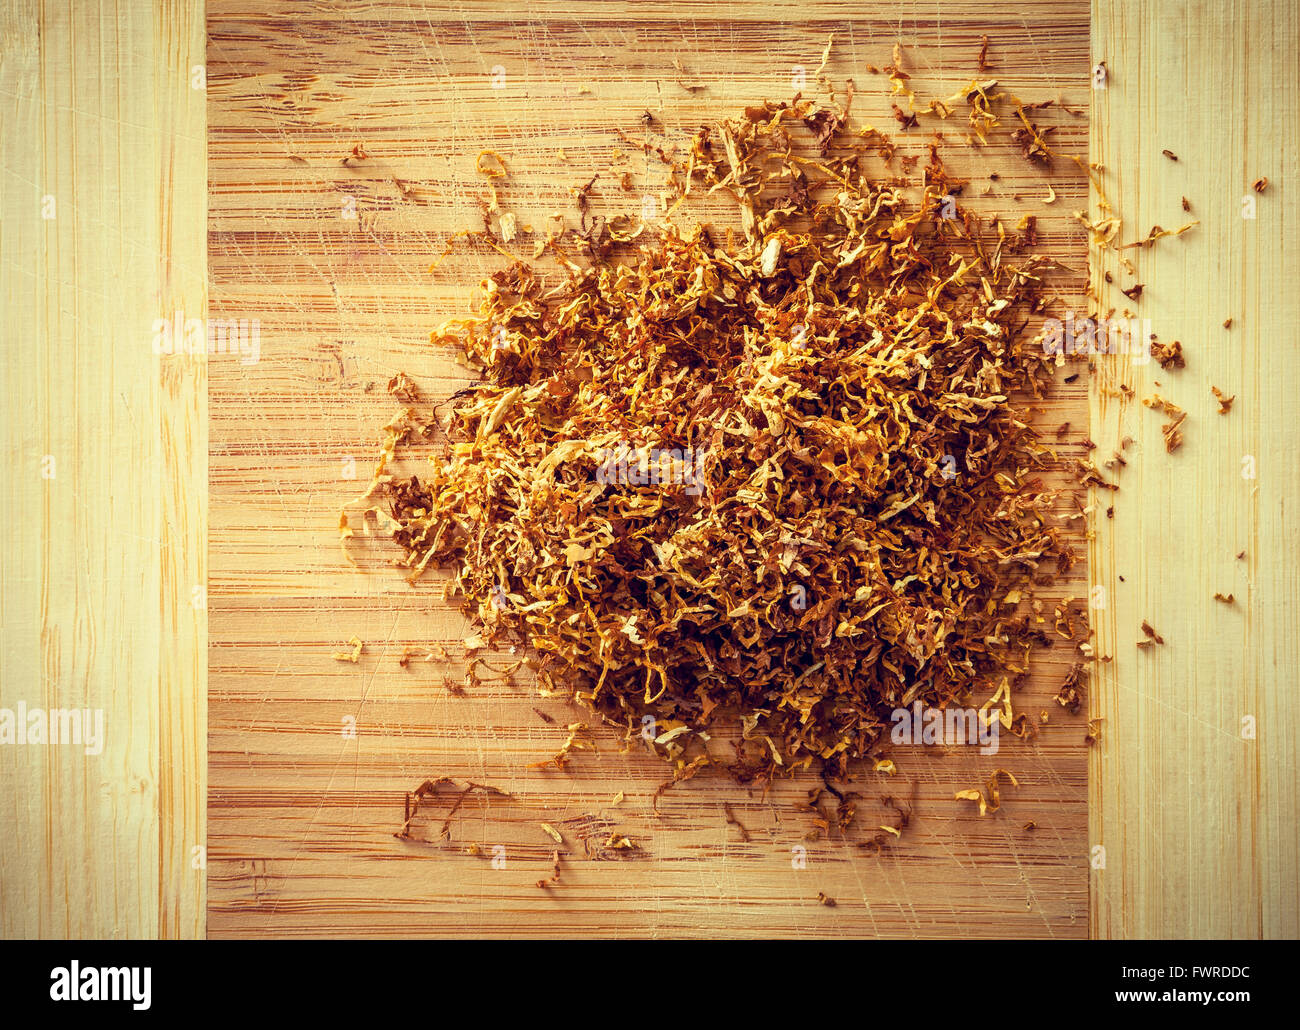 tubing tabacco on wood Stock Photo